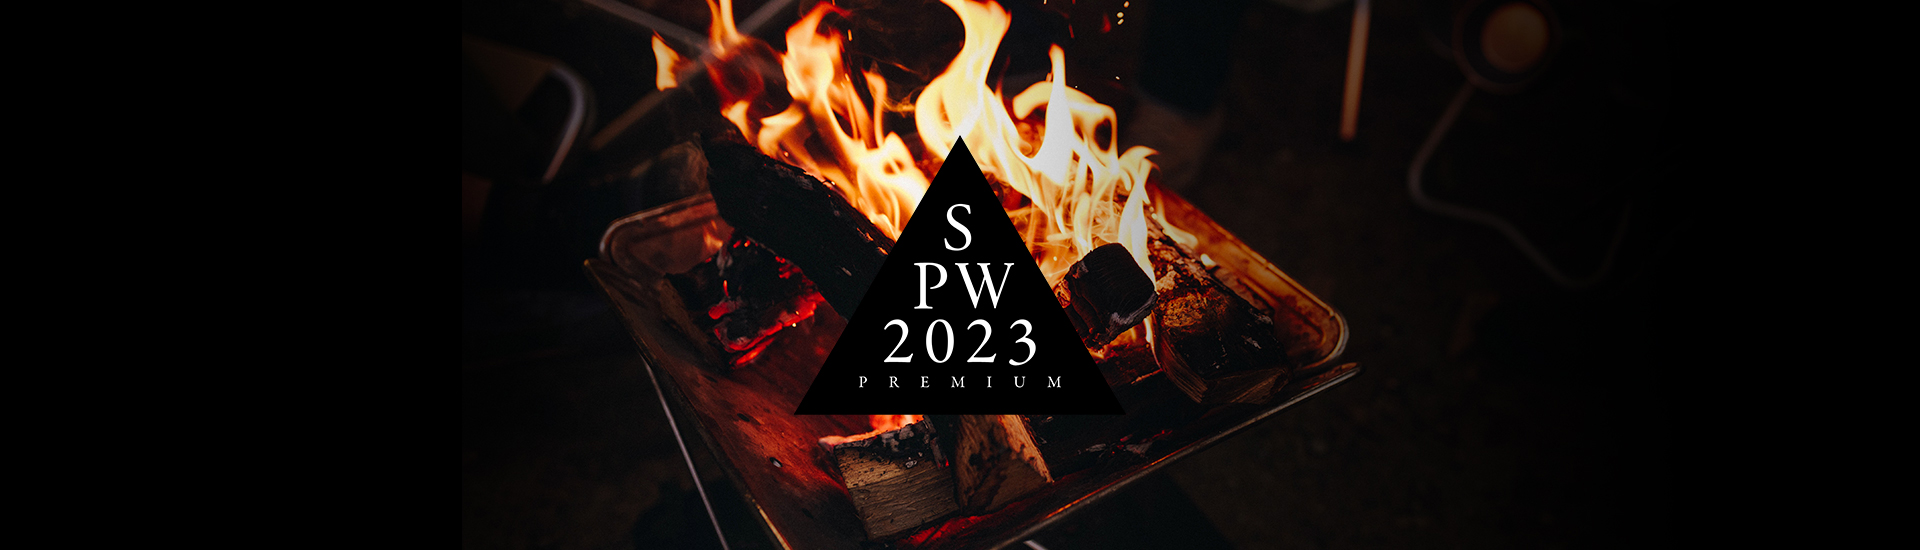 Snow Peak Way 2023 Premium